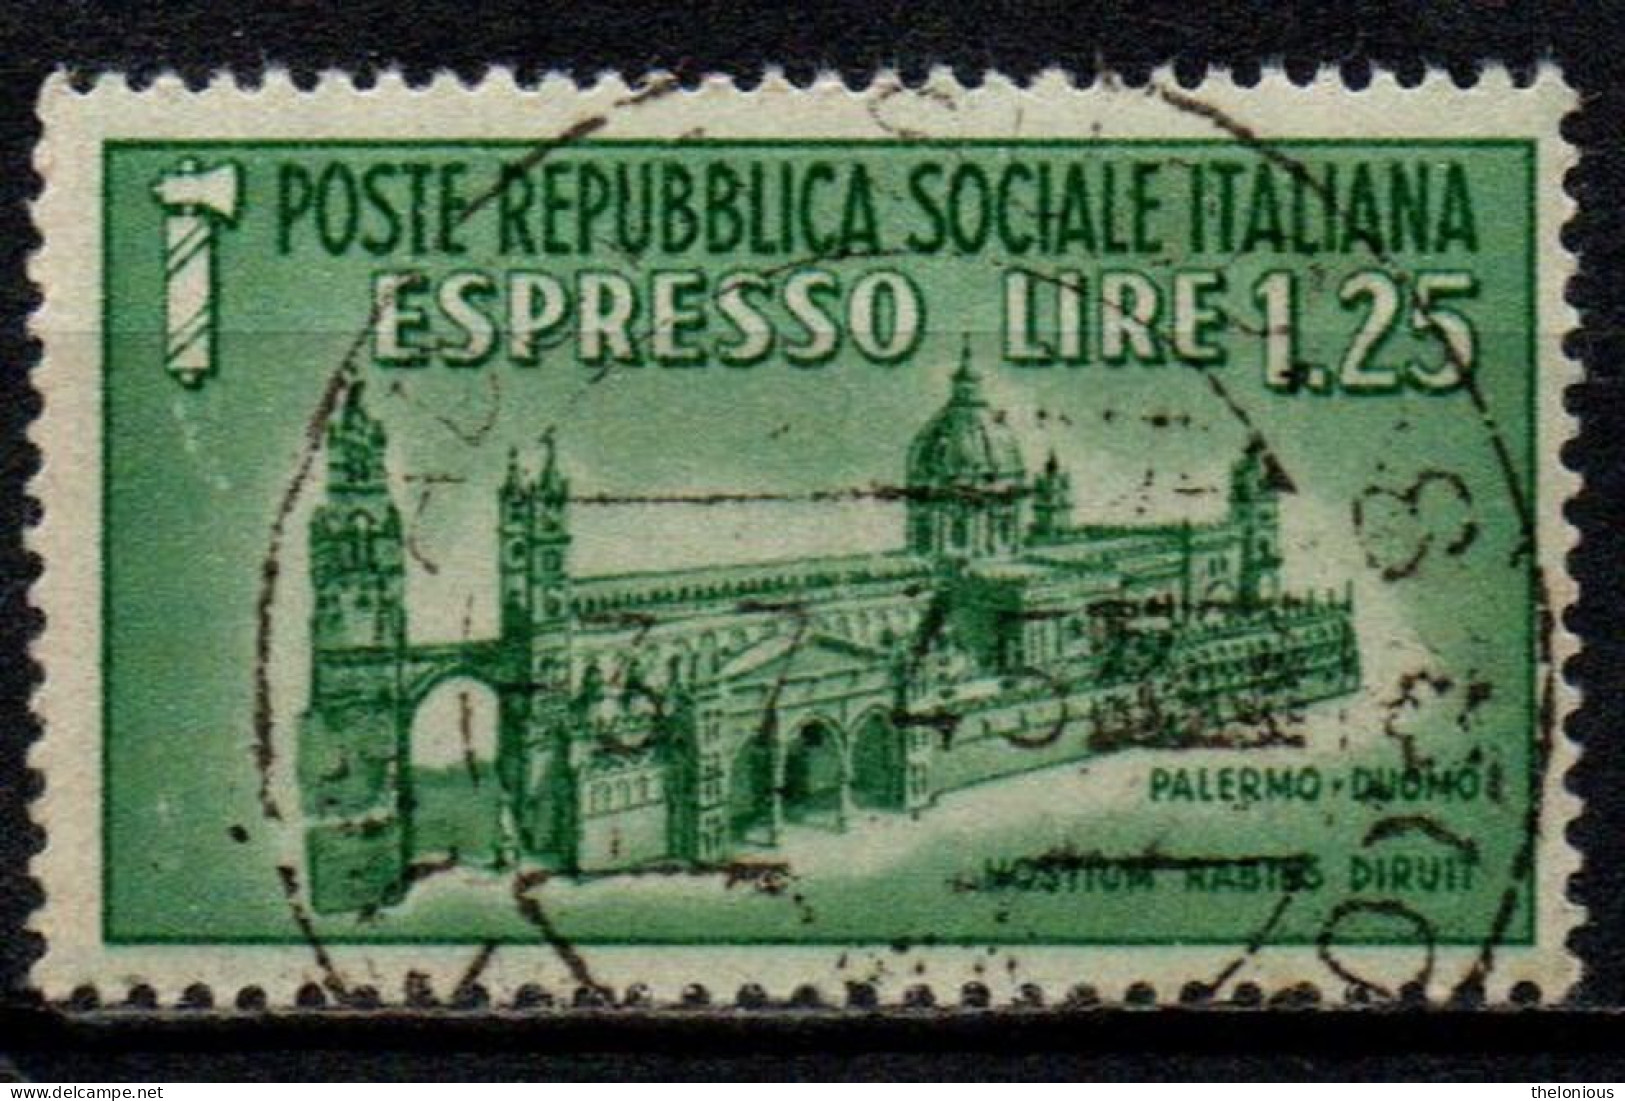 1944 Repubblica Sociale: Monumenti Distrutti - Espresso Lire 1,25 Usato - Posta Espresso